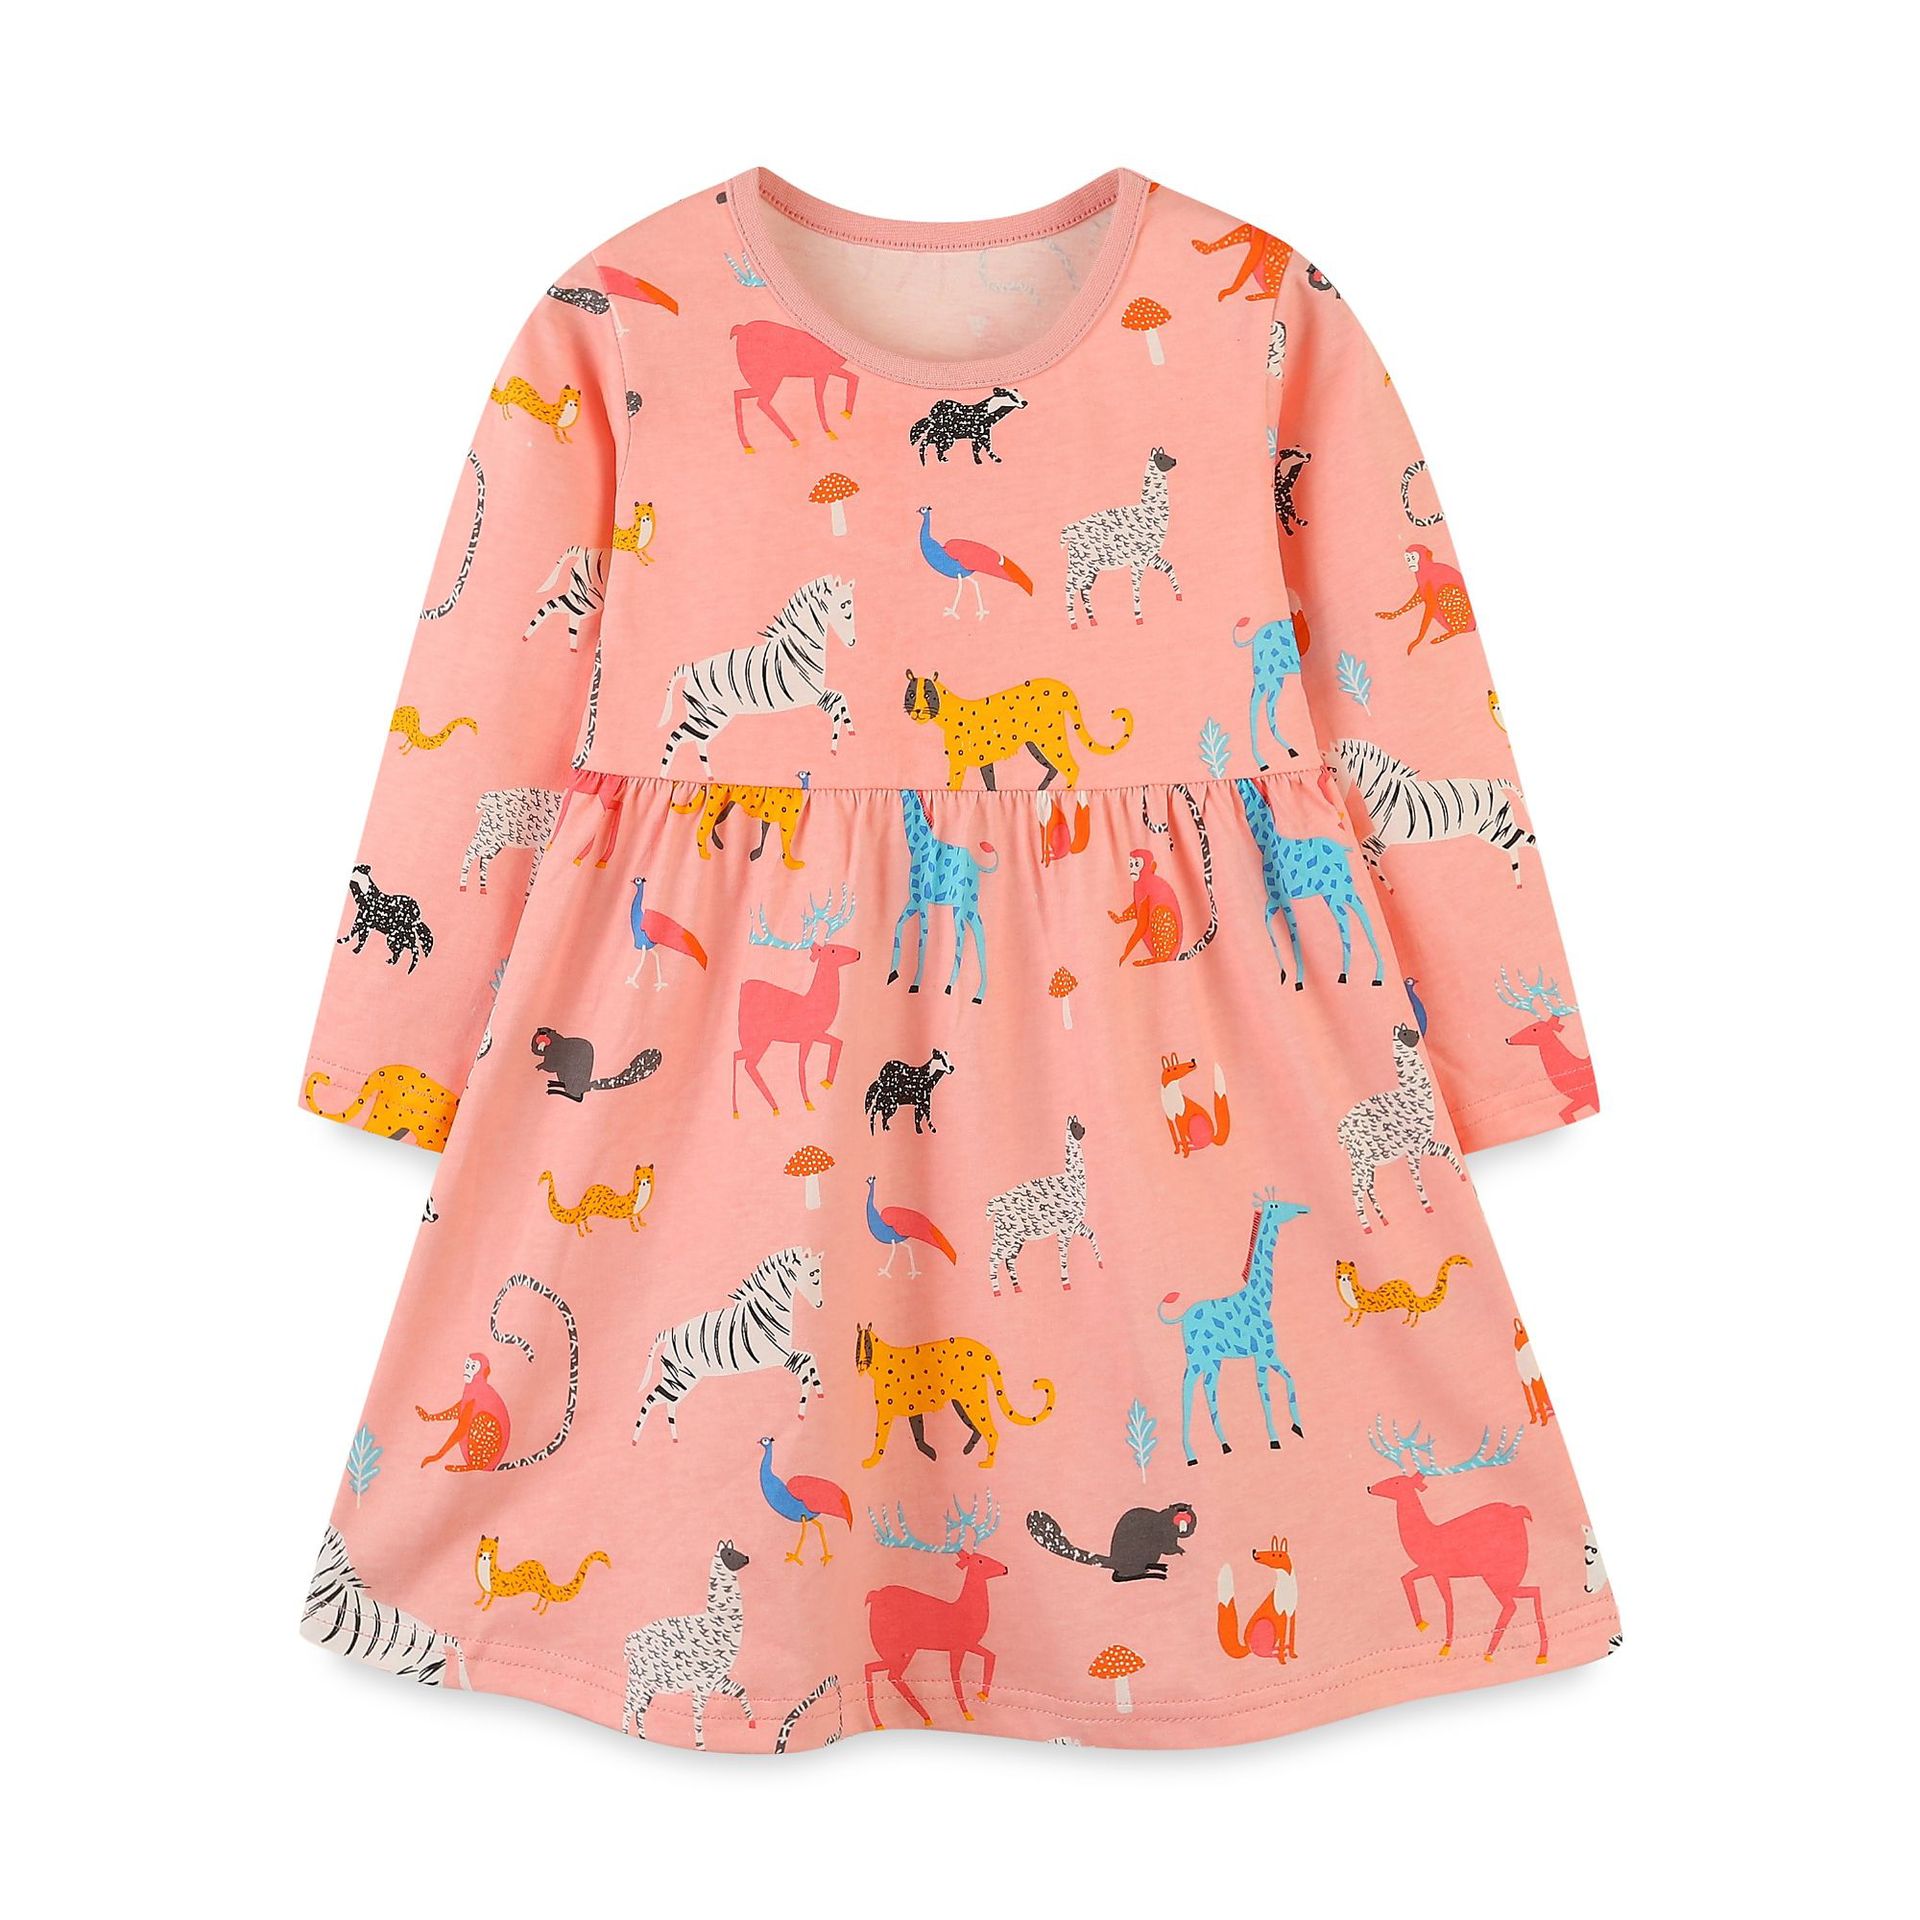 Autumn New Girls' Long Sleeve Dress Knitted Cotton Stitching Children's Dress Cartoon Printed Princess Dress